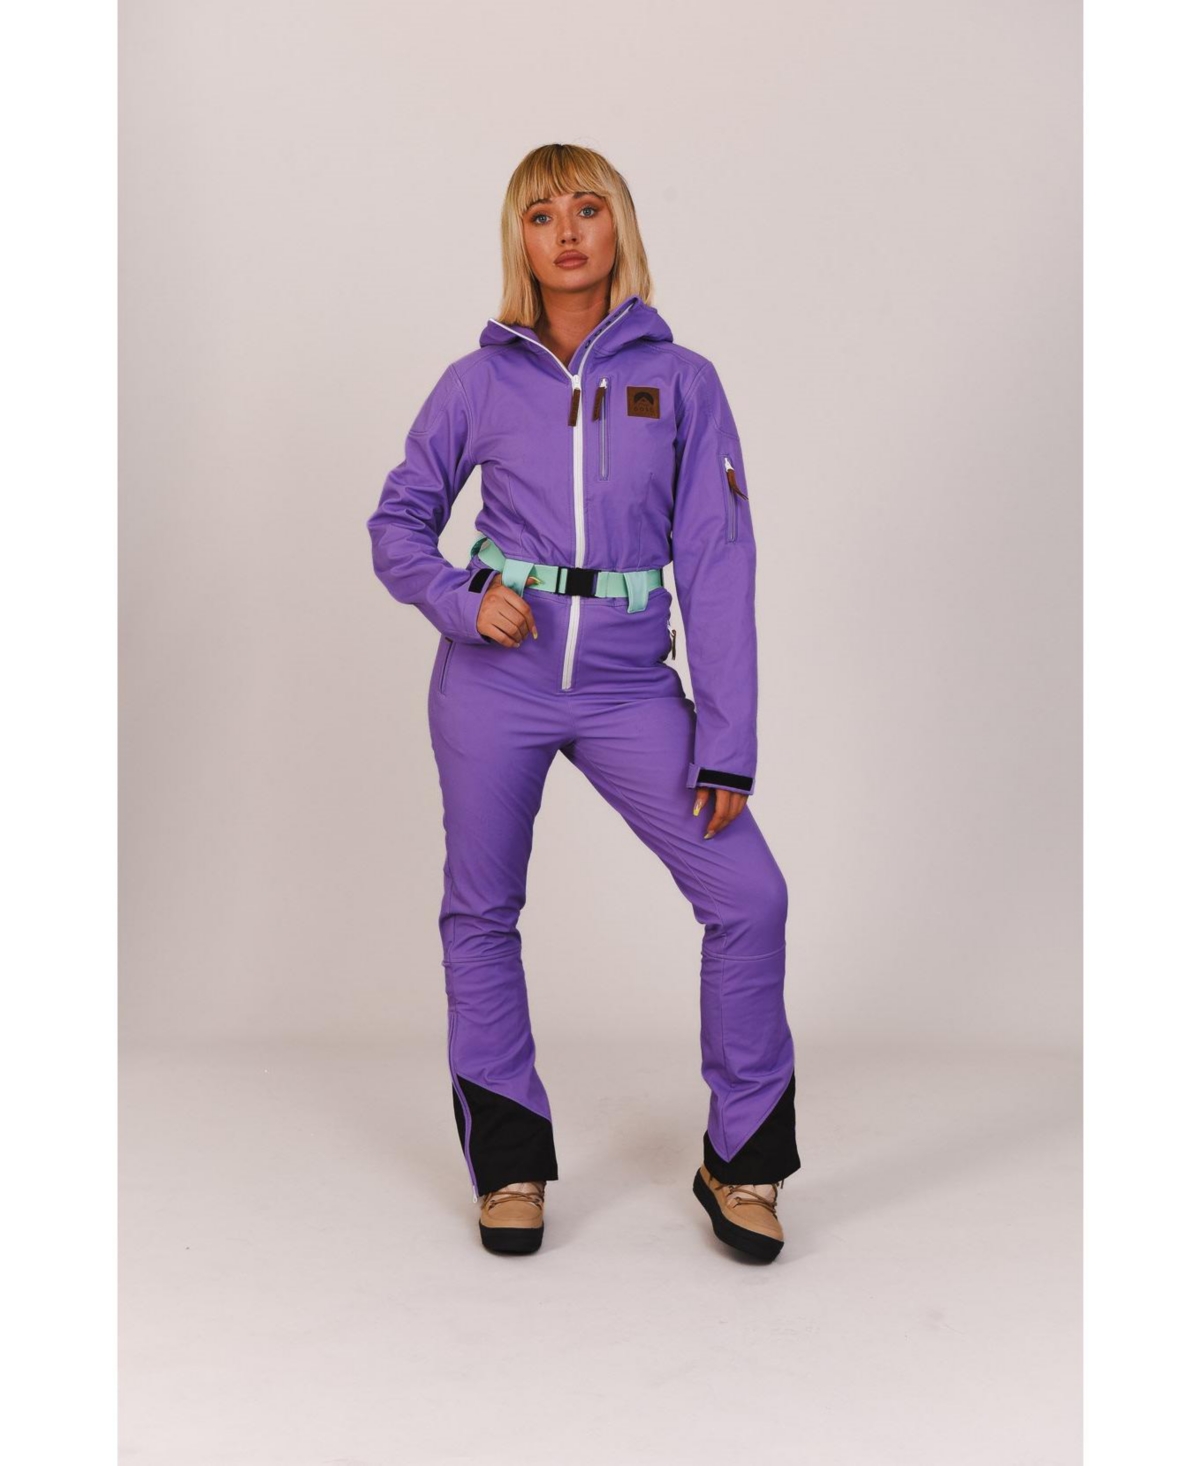 Chic Ski Suit Lavender - Women's - Lavender